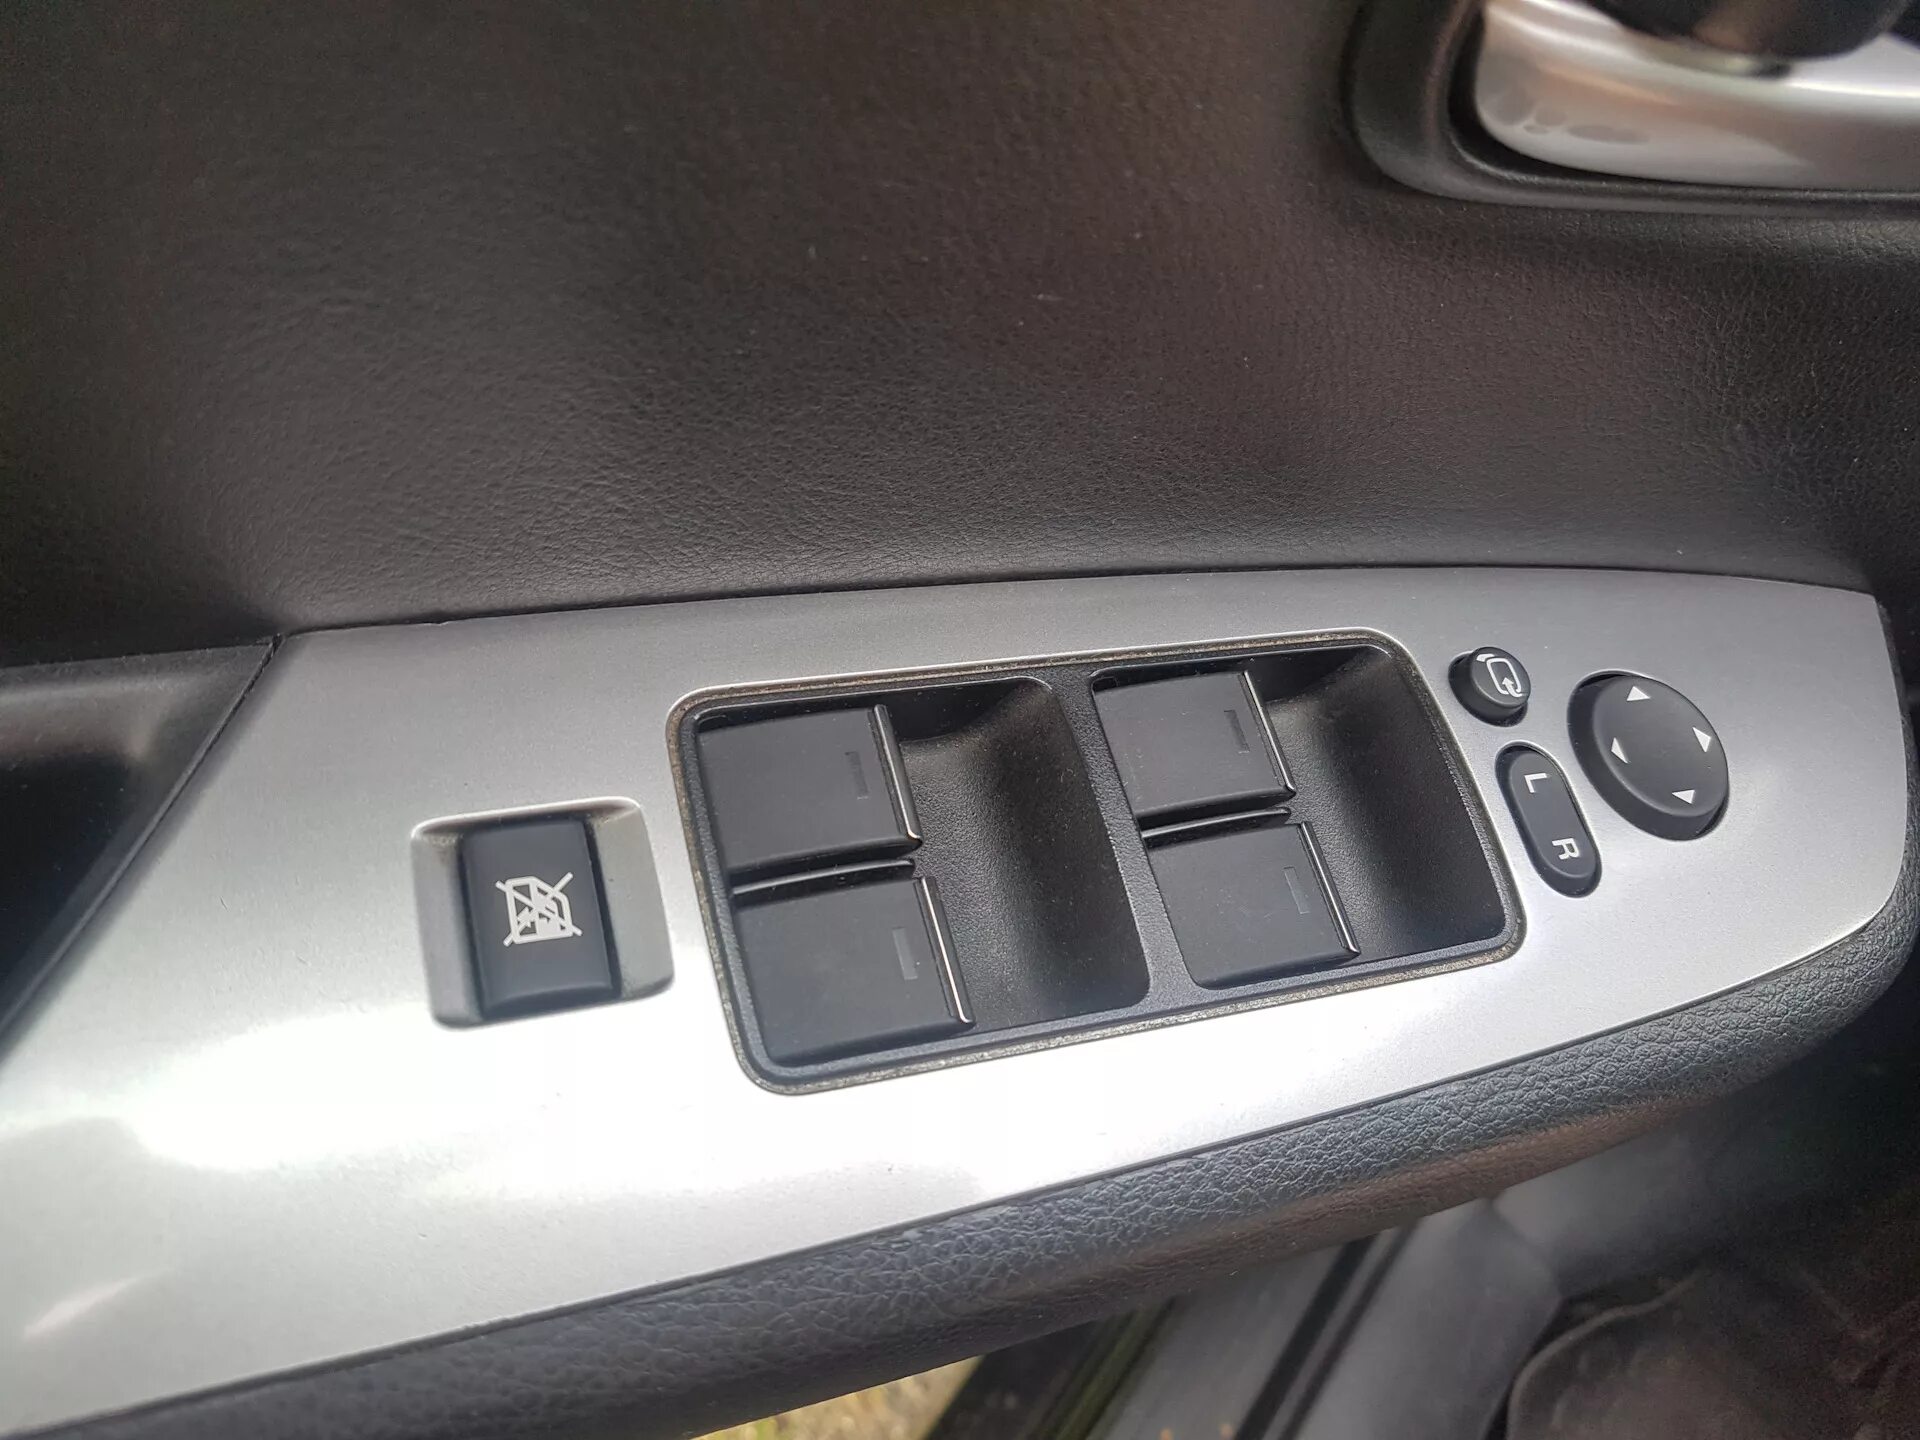 Кнопки мазда 6 gh. Подсветка кнопок стеклоподъемника Mazda 6 GH. Кнопок стеклоподъёмника Mazda 2. Mazda 6 GH кнопки стеклоподъемника. Кнопки стеклоподъёмника Мазда 6 GH.